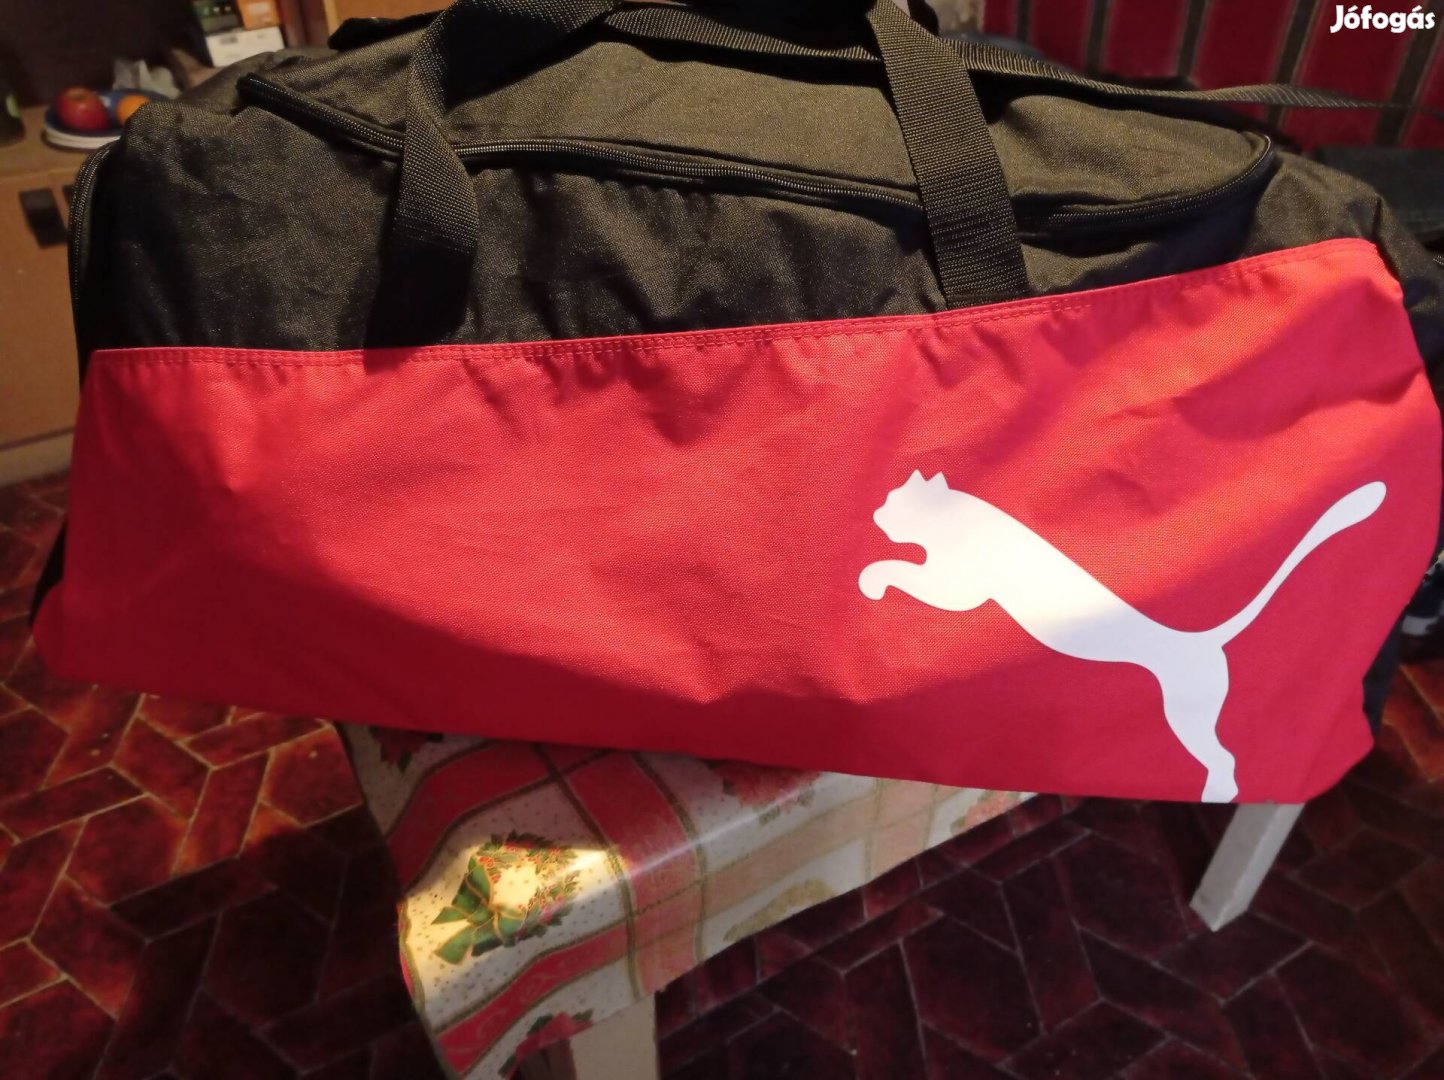 Eredeti Puma sport táska, xl-es nagy meretű.